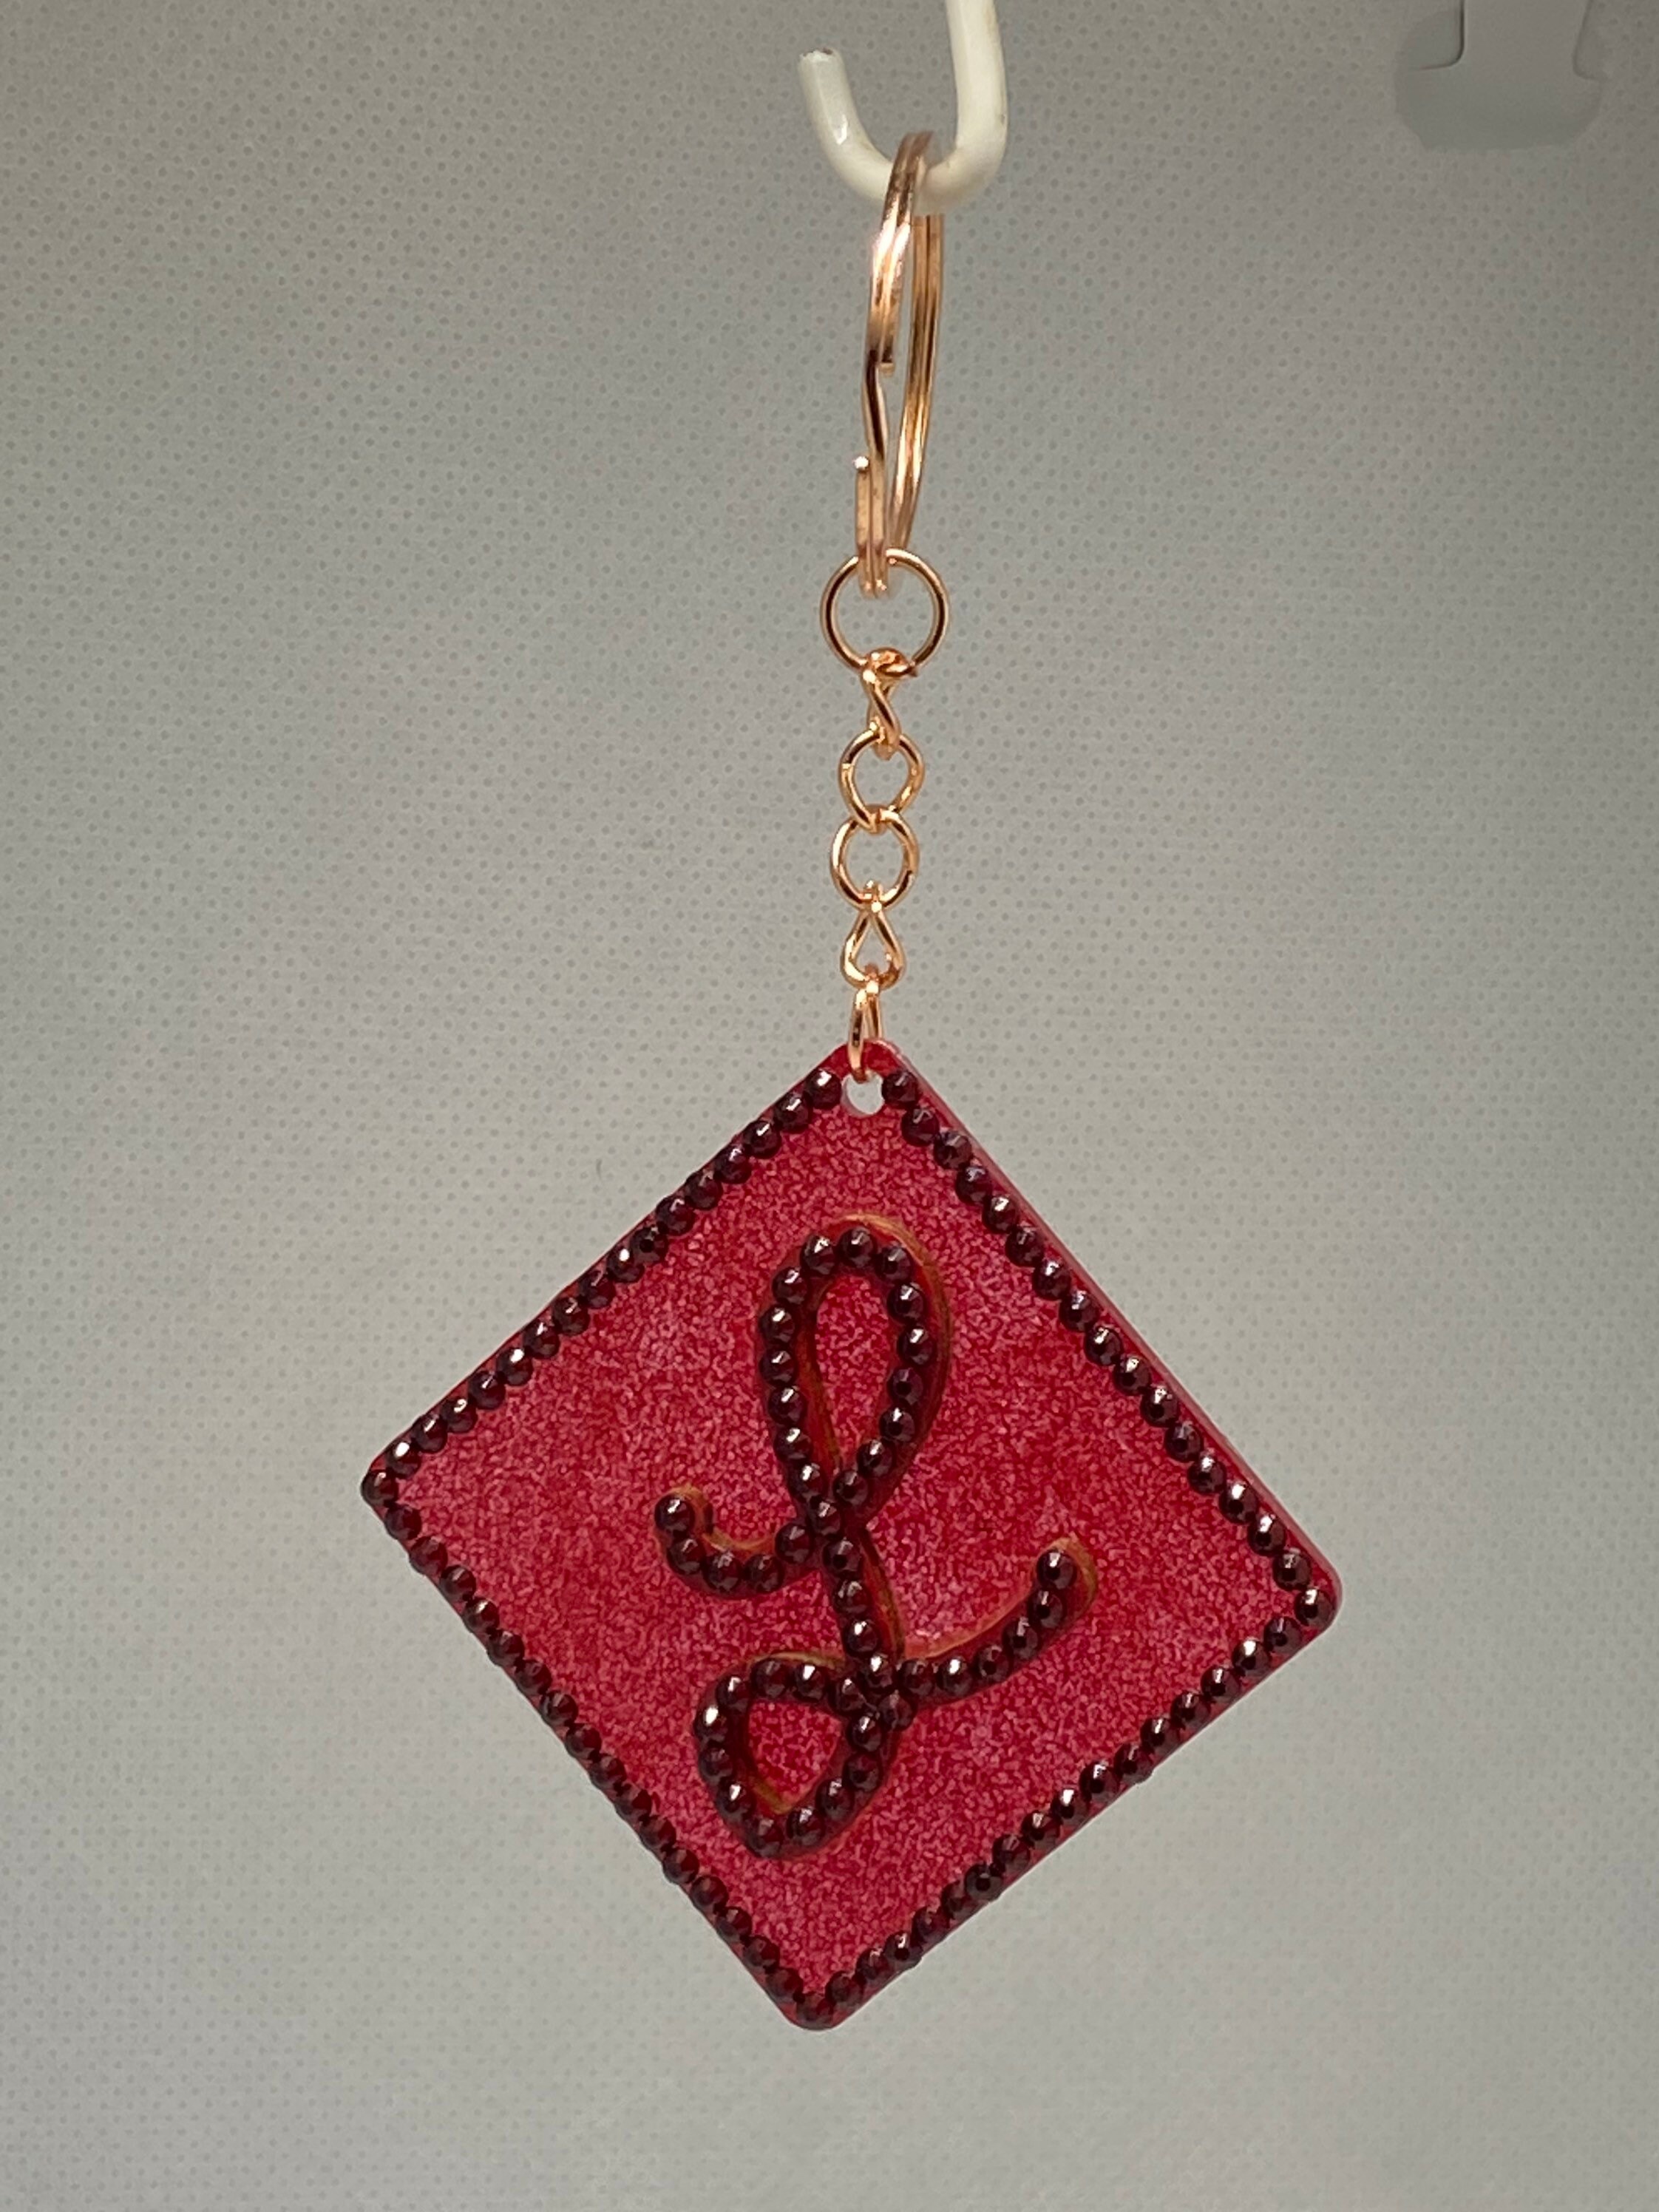 Stitch Diamond Art Keychain 